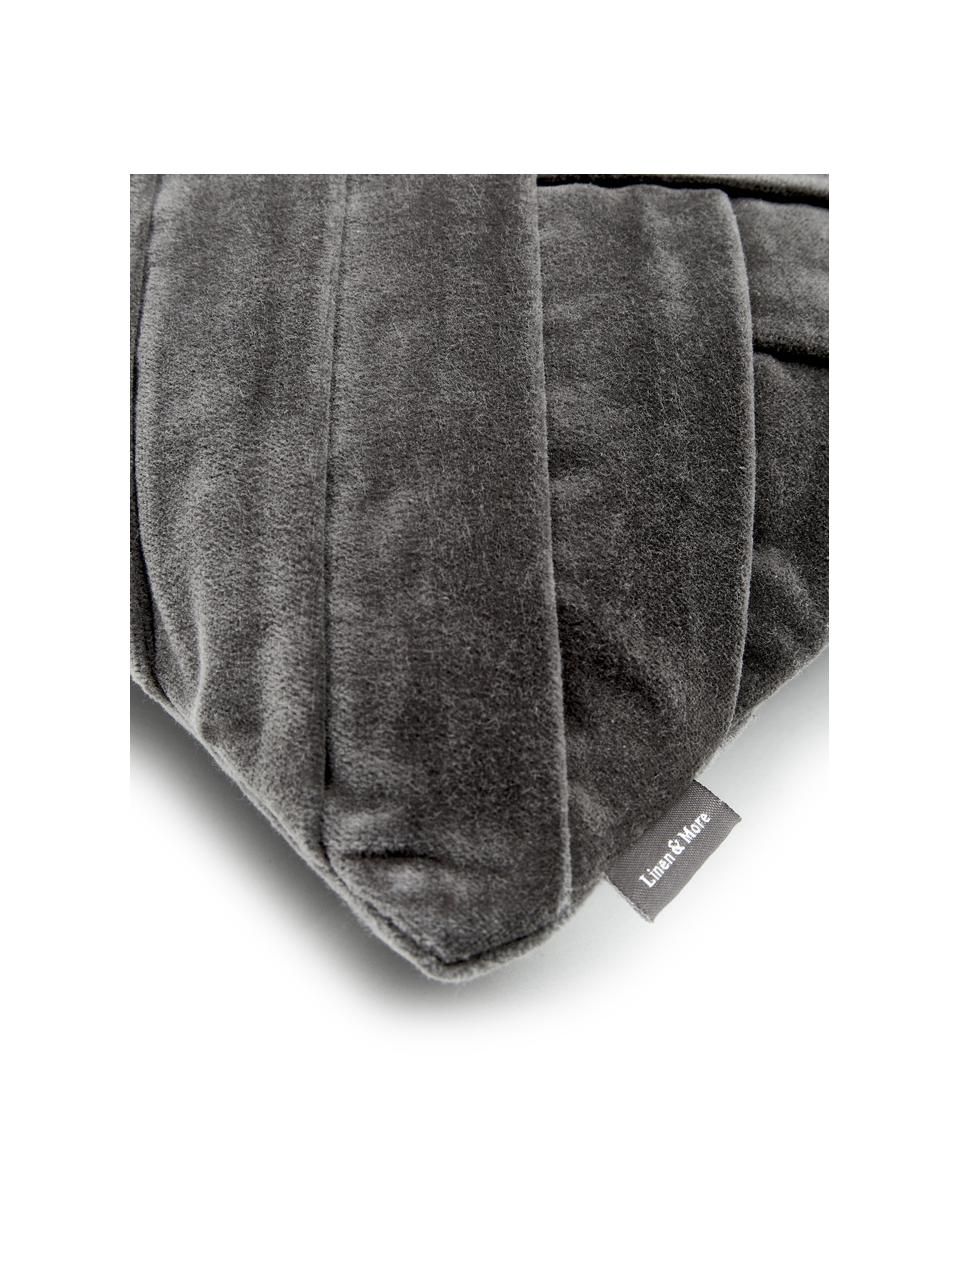 Cuscino in velluto con superfice strutturata Folded, Rivestimento: 100% velluto di cotone, Grigio, Larg. 30 x Lung. 50 cm